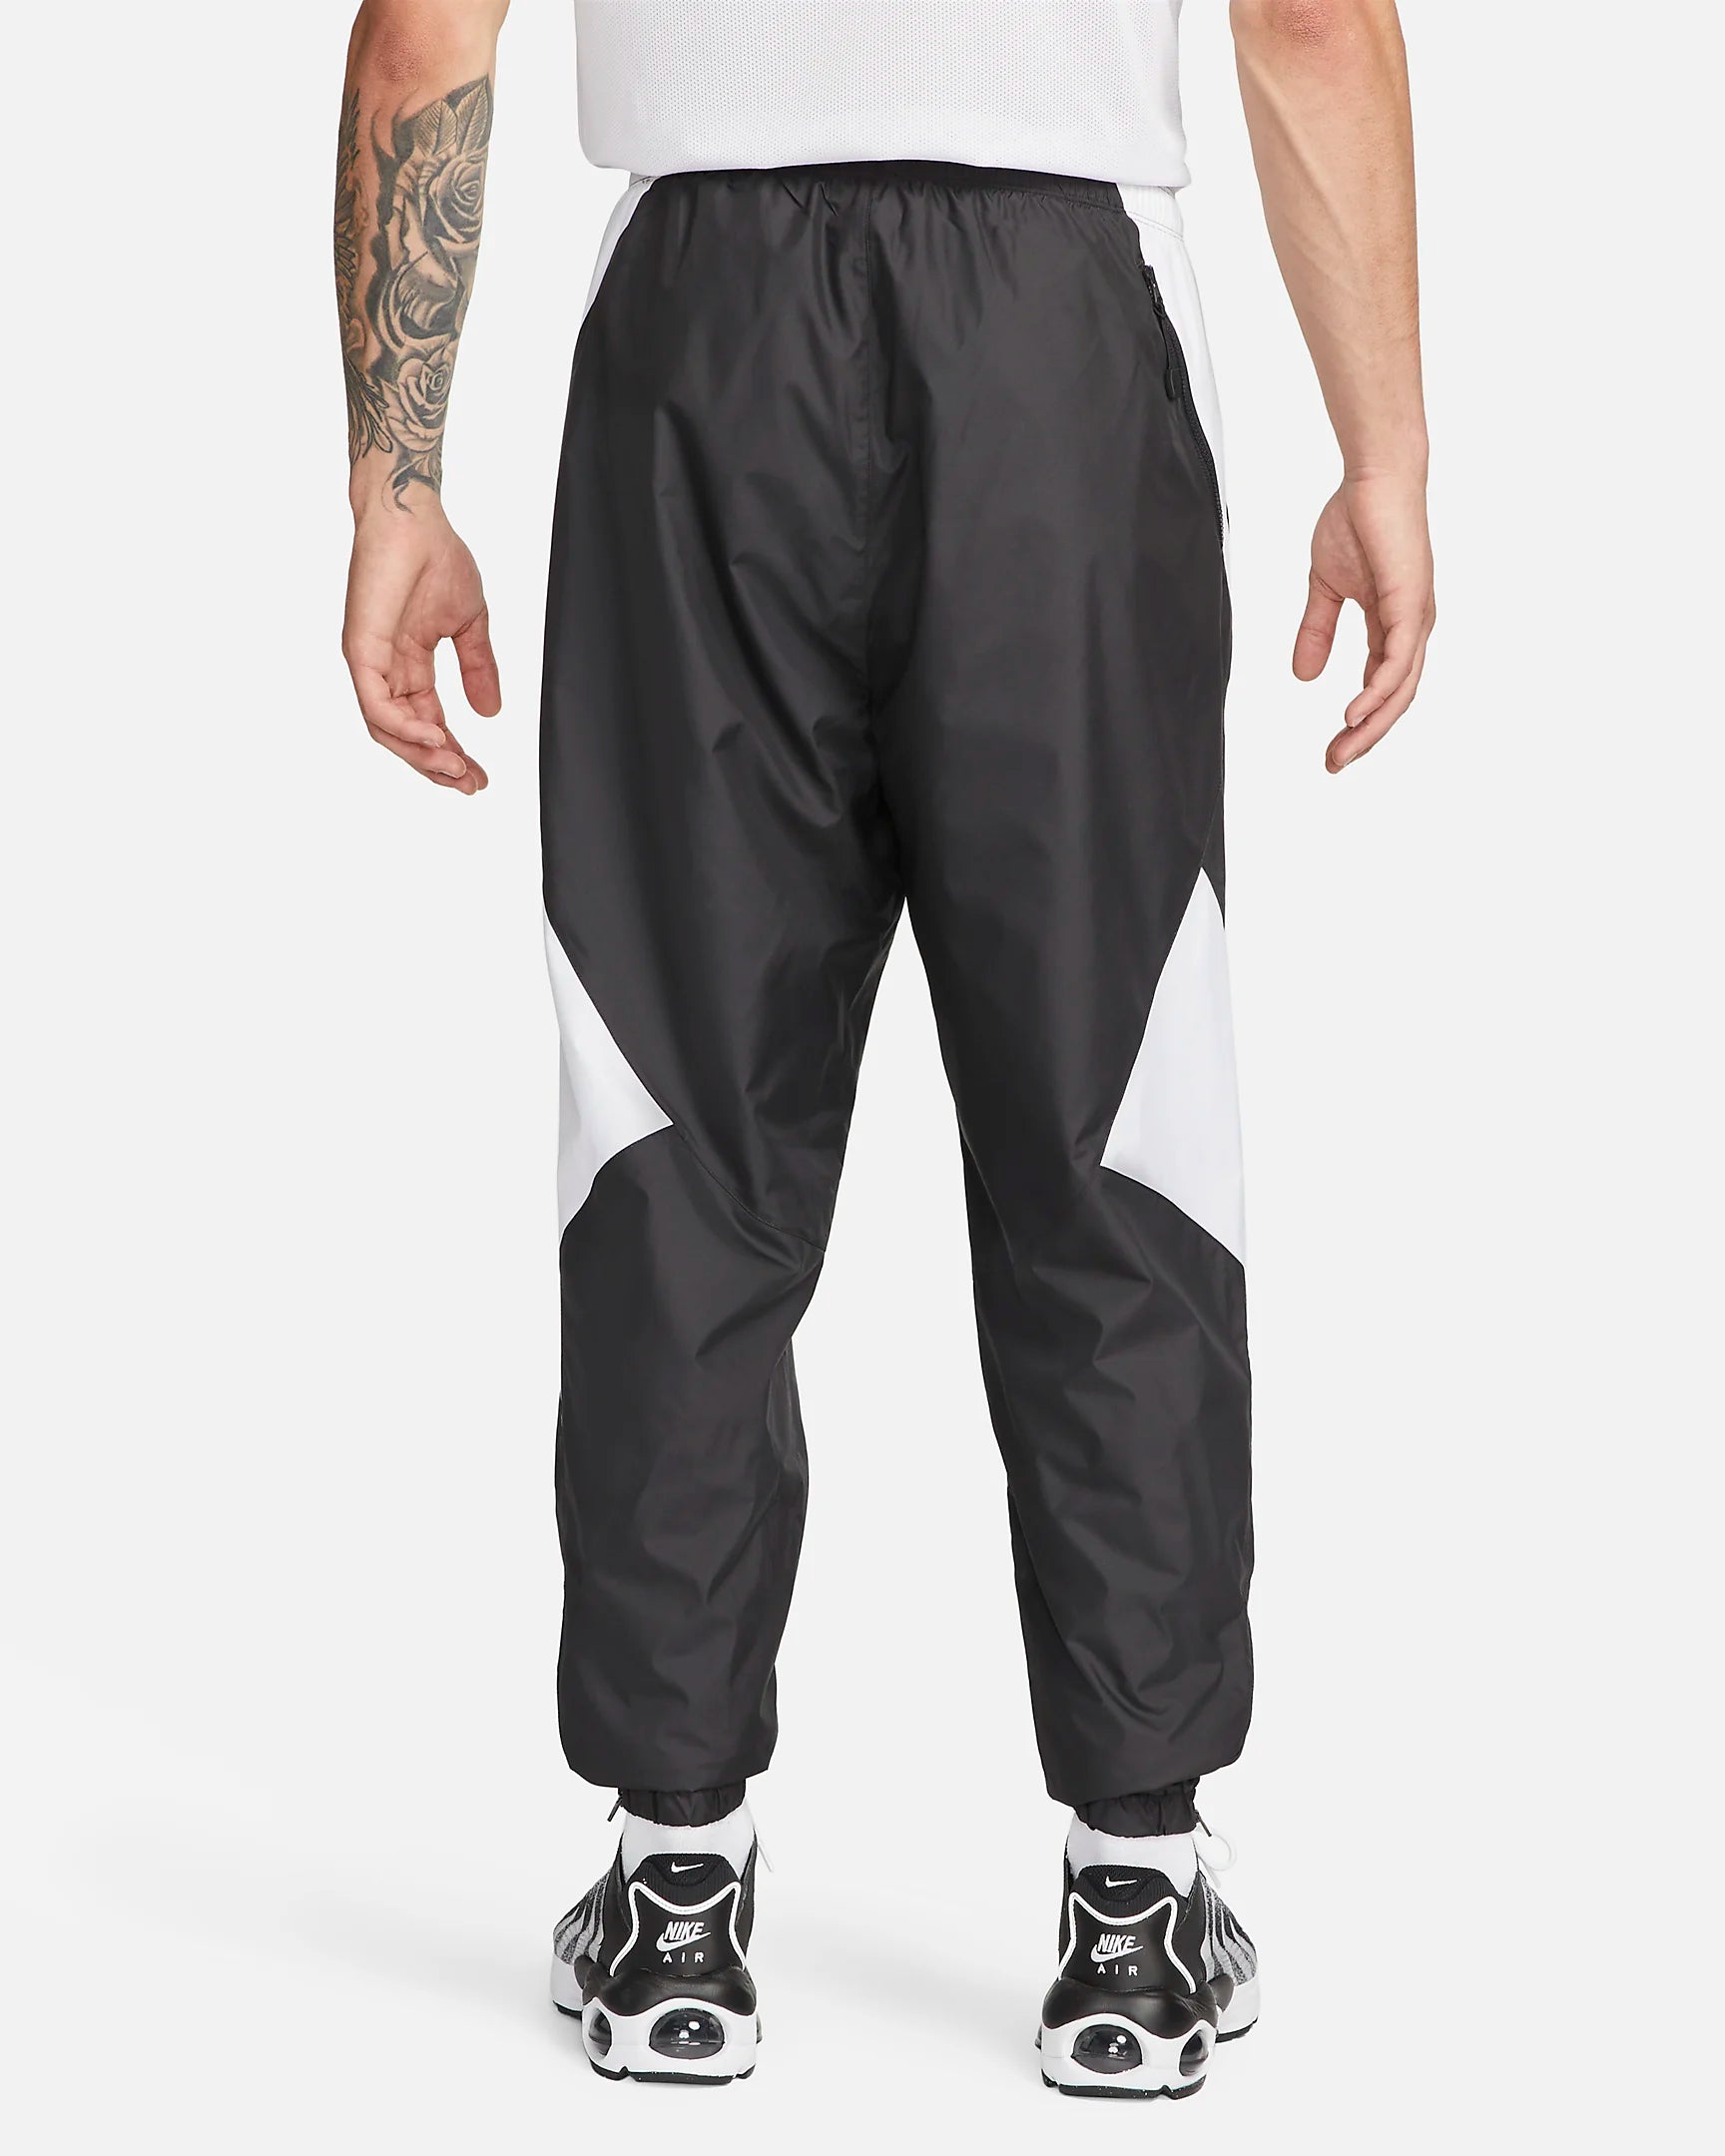 Pantalon de survêtement Nike FC Repel - Noir